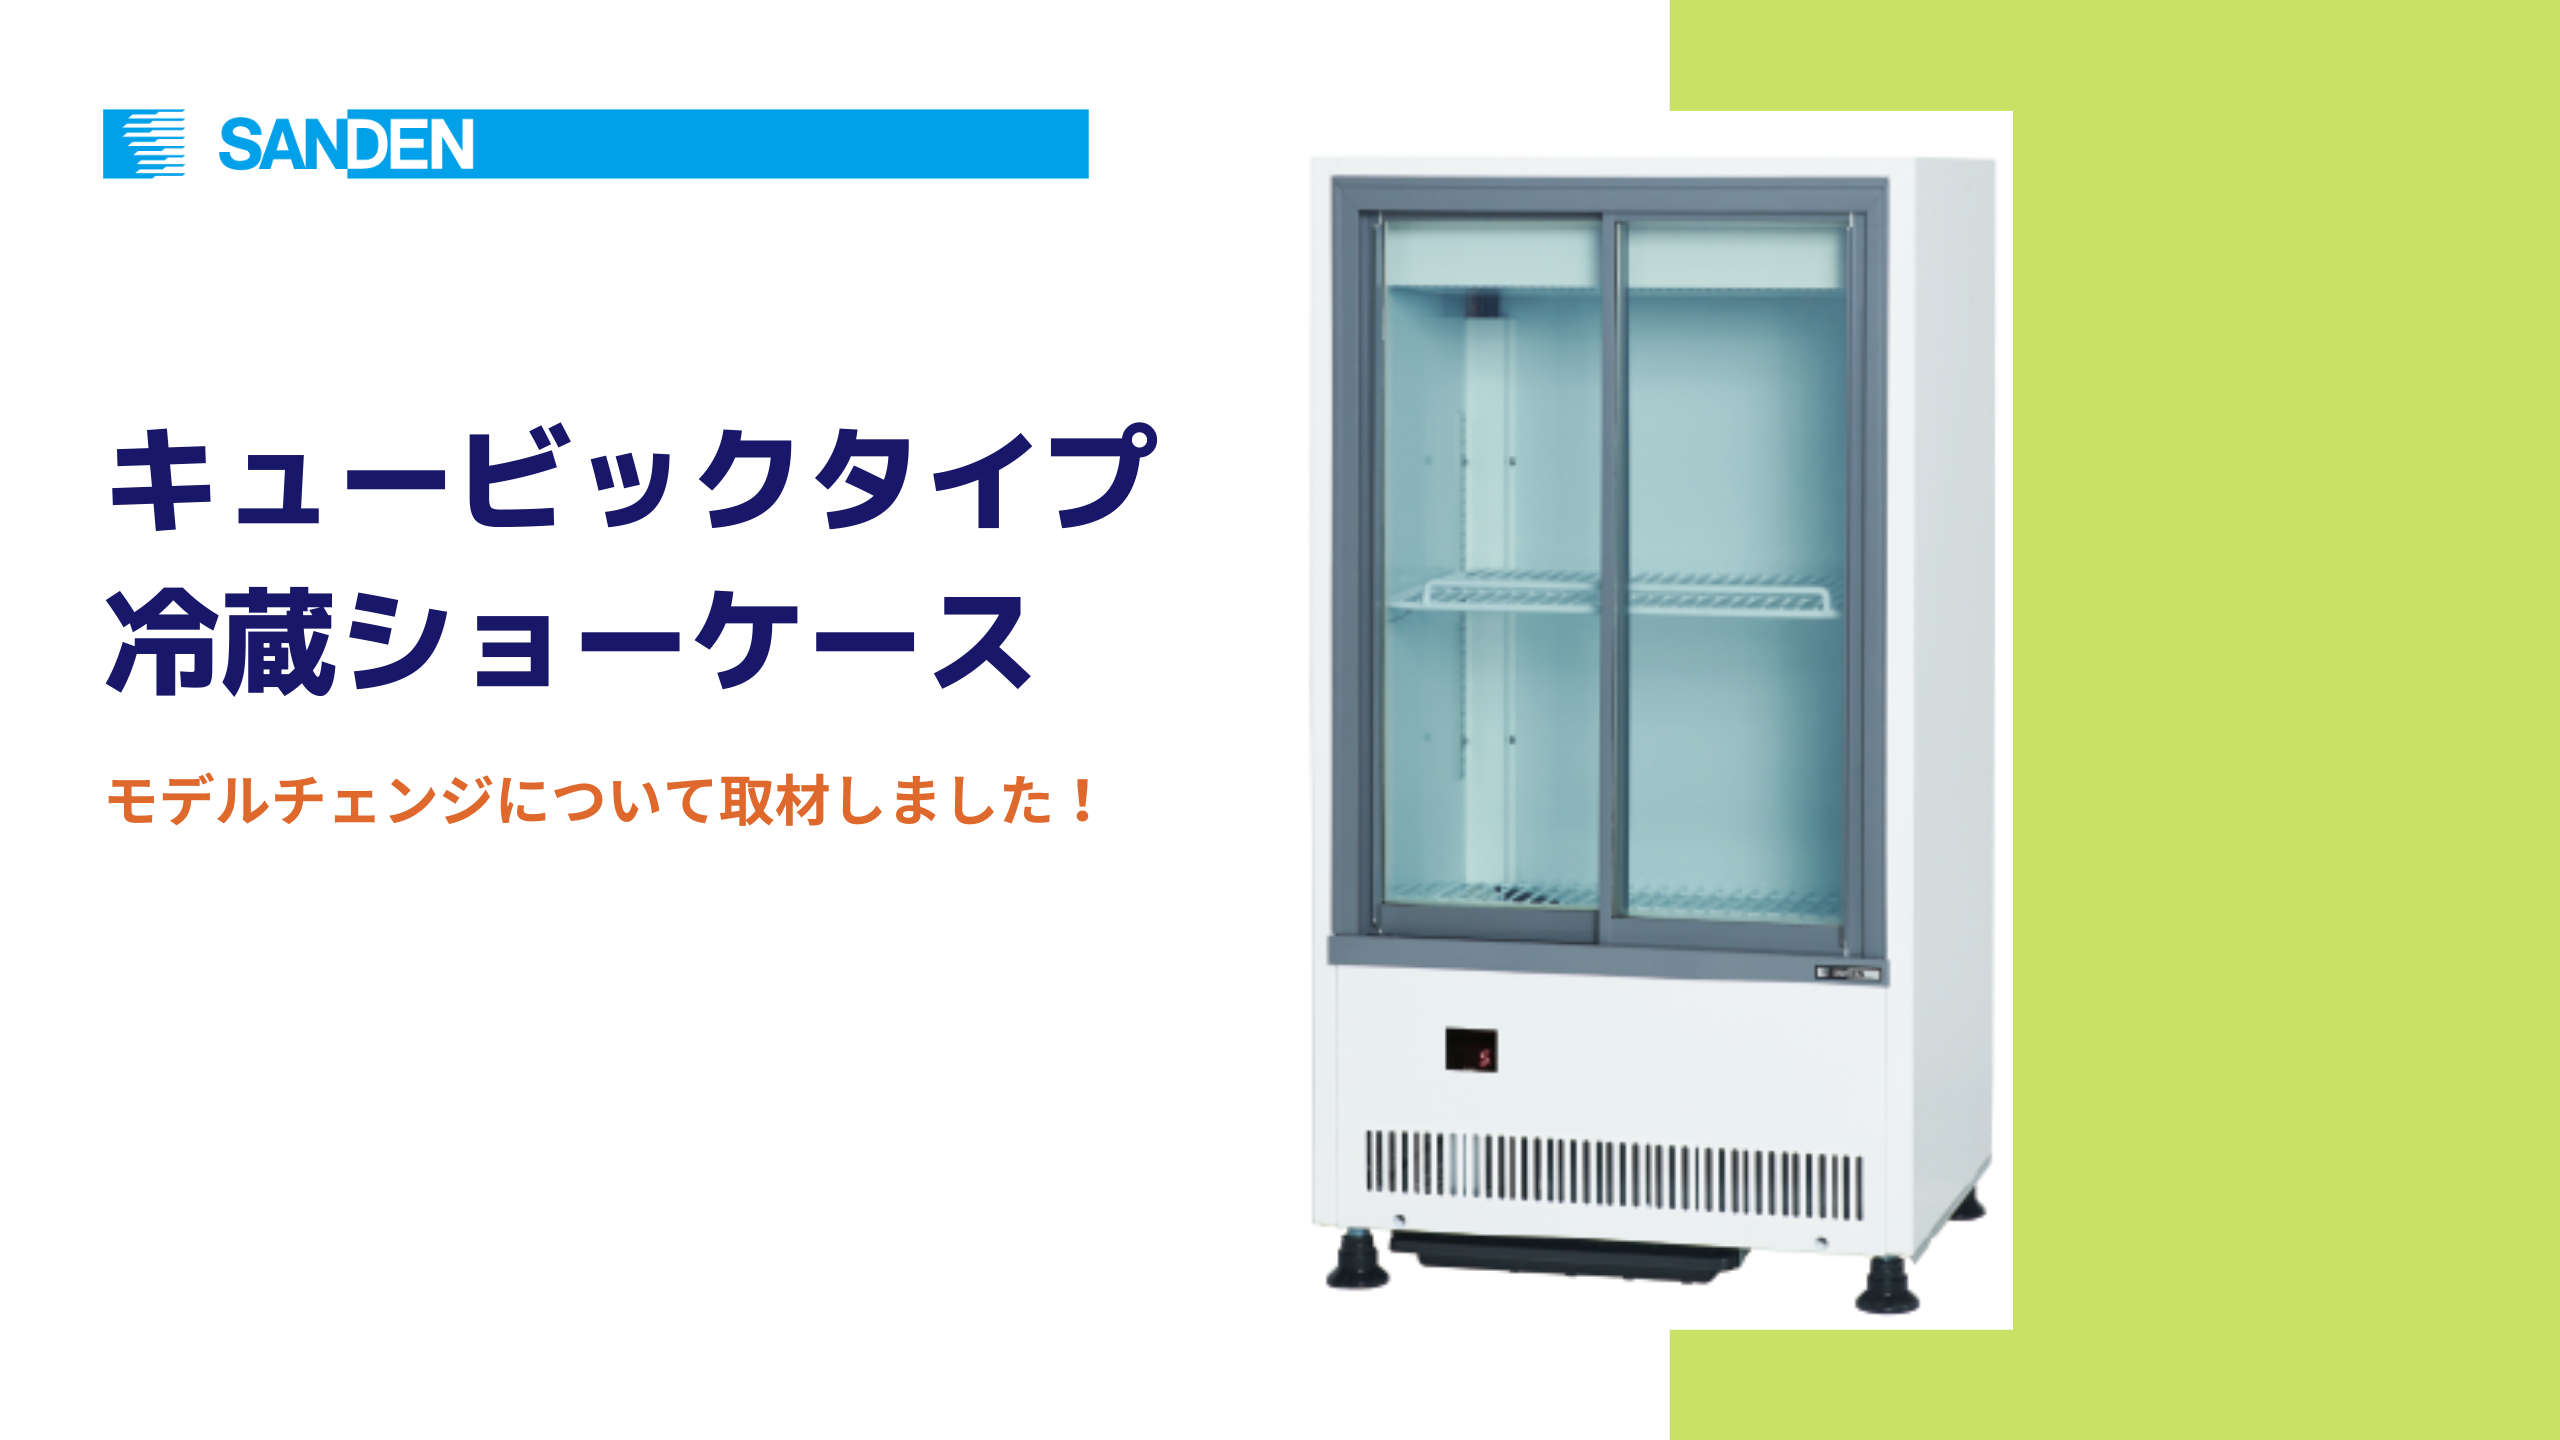 サンデンの新!!「冷蔵ショーケース」は厨房の人手不足対策に優しい設計 